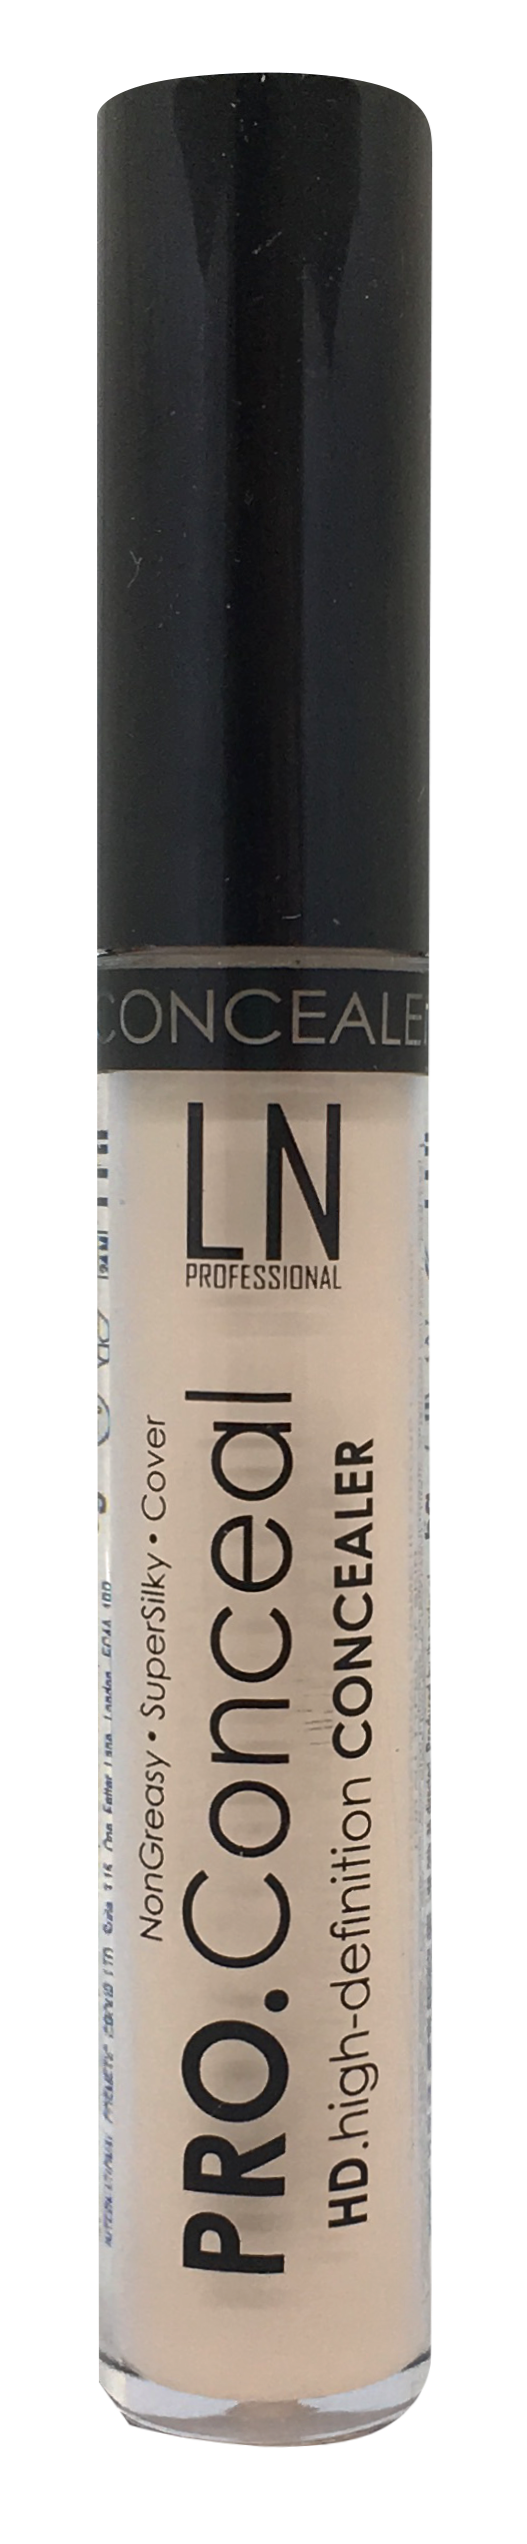 Рідкий консилер для обличчя LN Professional Pro.Conceal, відтінок 03, 6 мл - фото 1